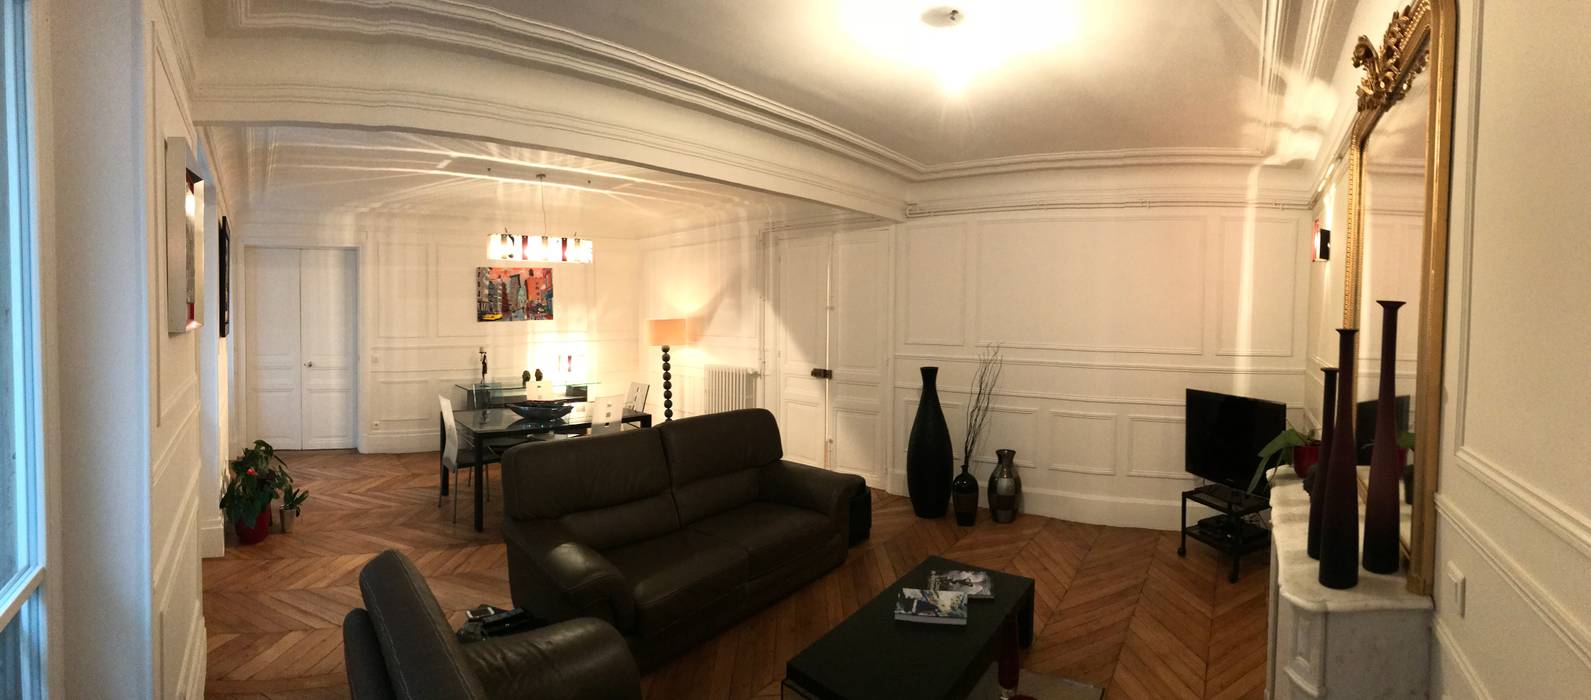 Appartement - Paris 5è - Atelier Florent, ATELIER FLORENT - Architectes d'Intérieur Paris ATELIER FLORENT - Architectes d'Intérieur Paris Salon classique